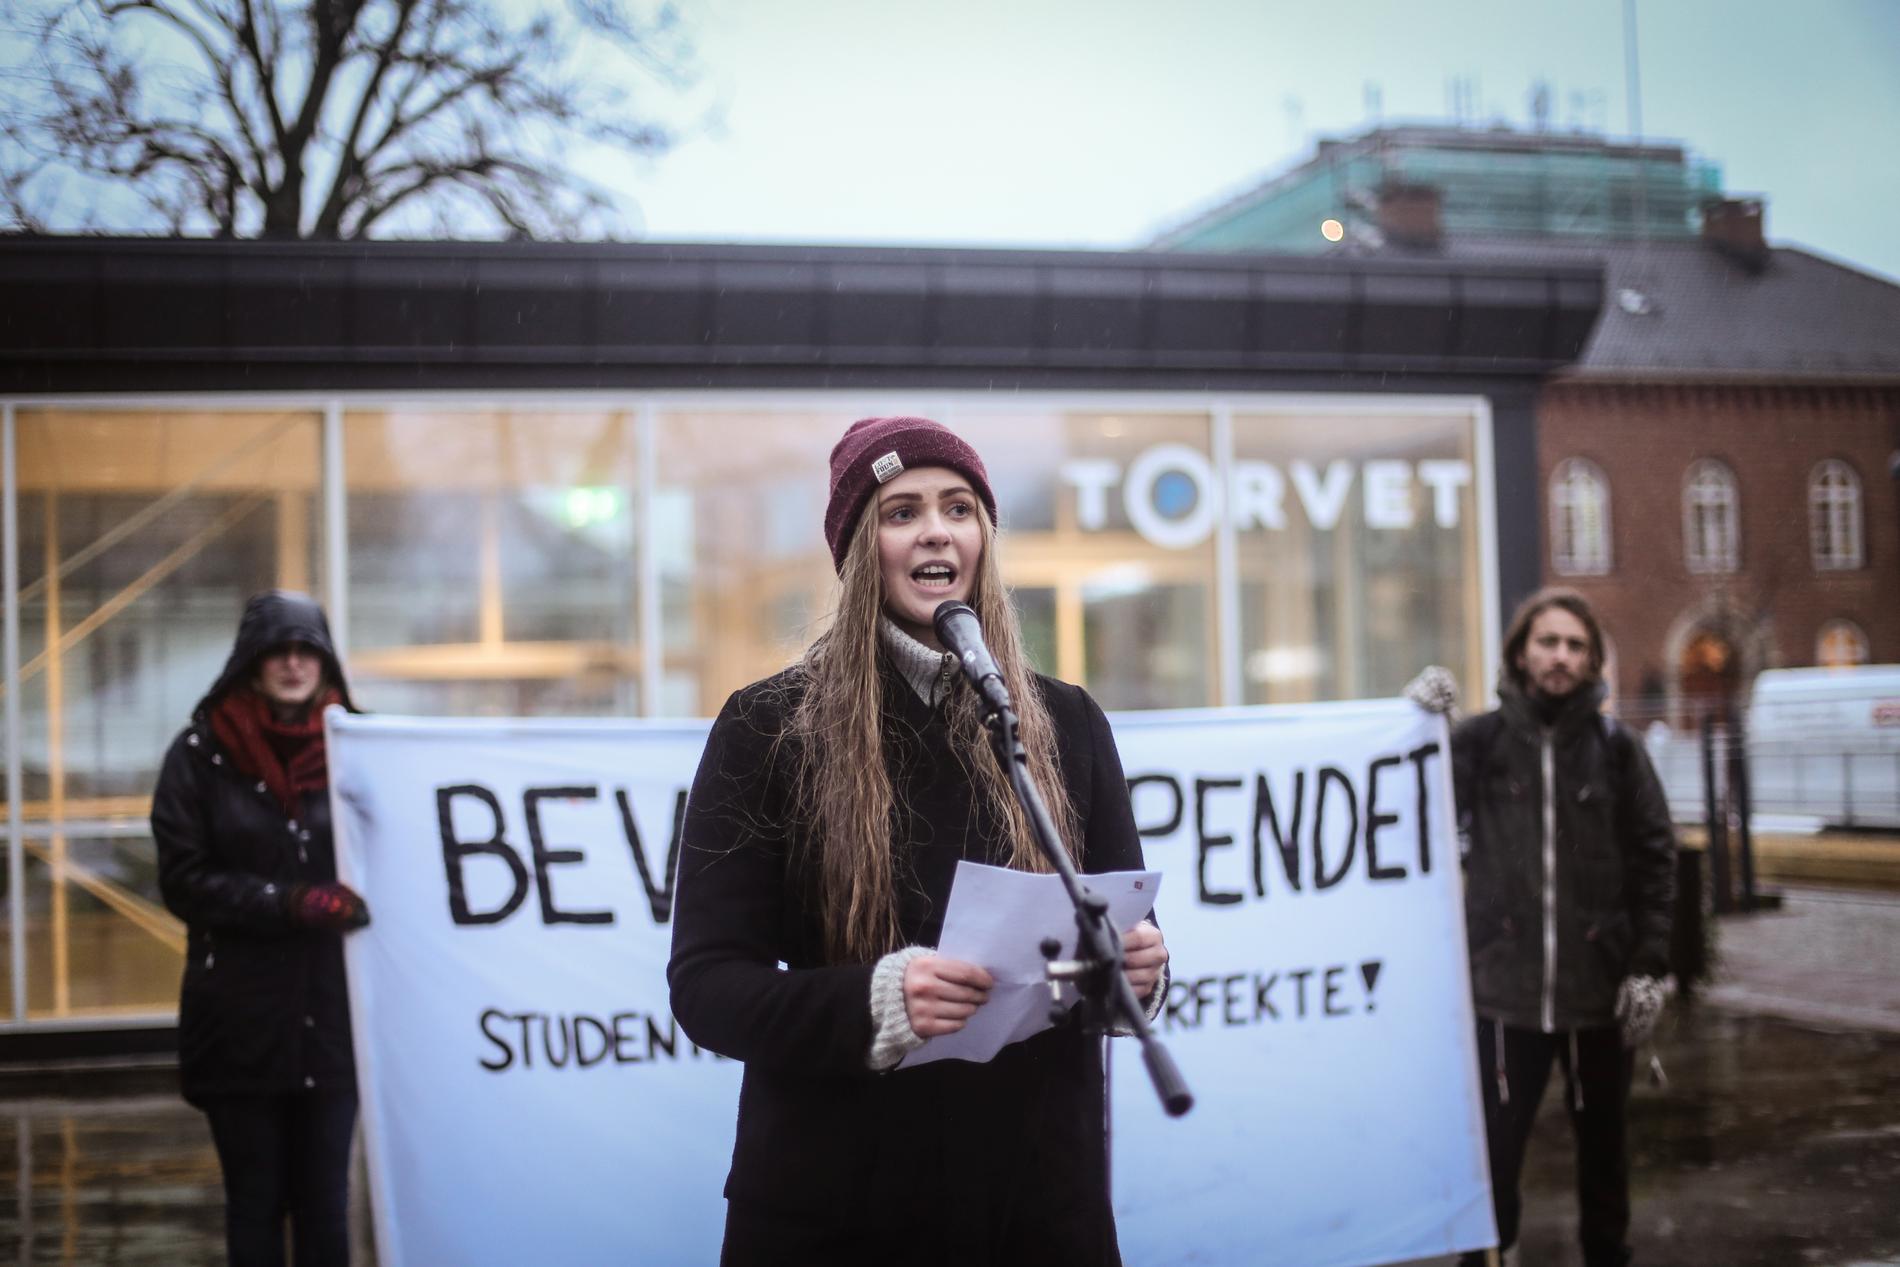  Øyvor Fossli Loddengaard, lokallagsleder for pedagogstudentene på UiA, var en av dem som holdt appell under demonstrasjonen torsdag formiddag. 